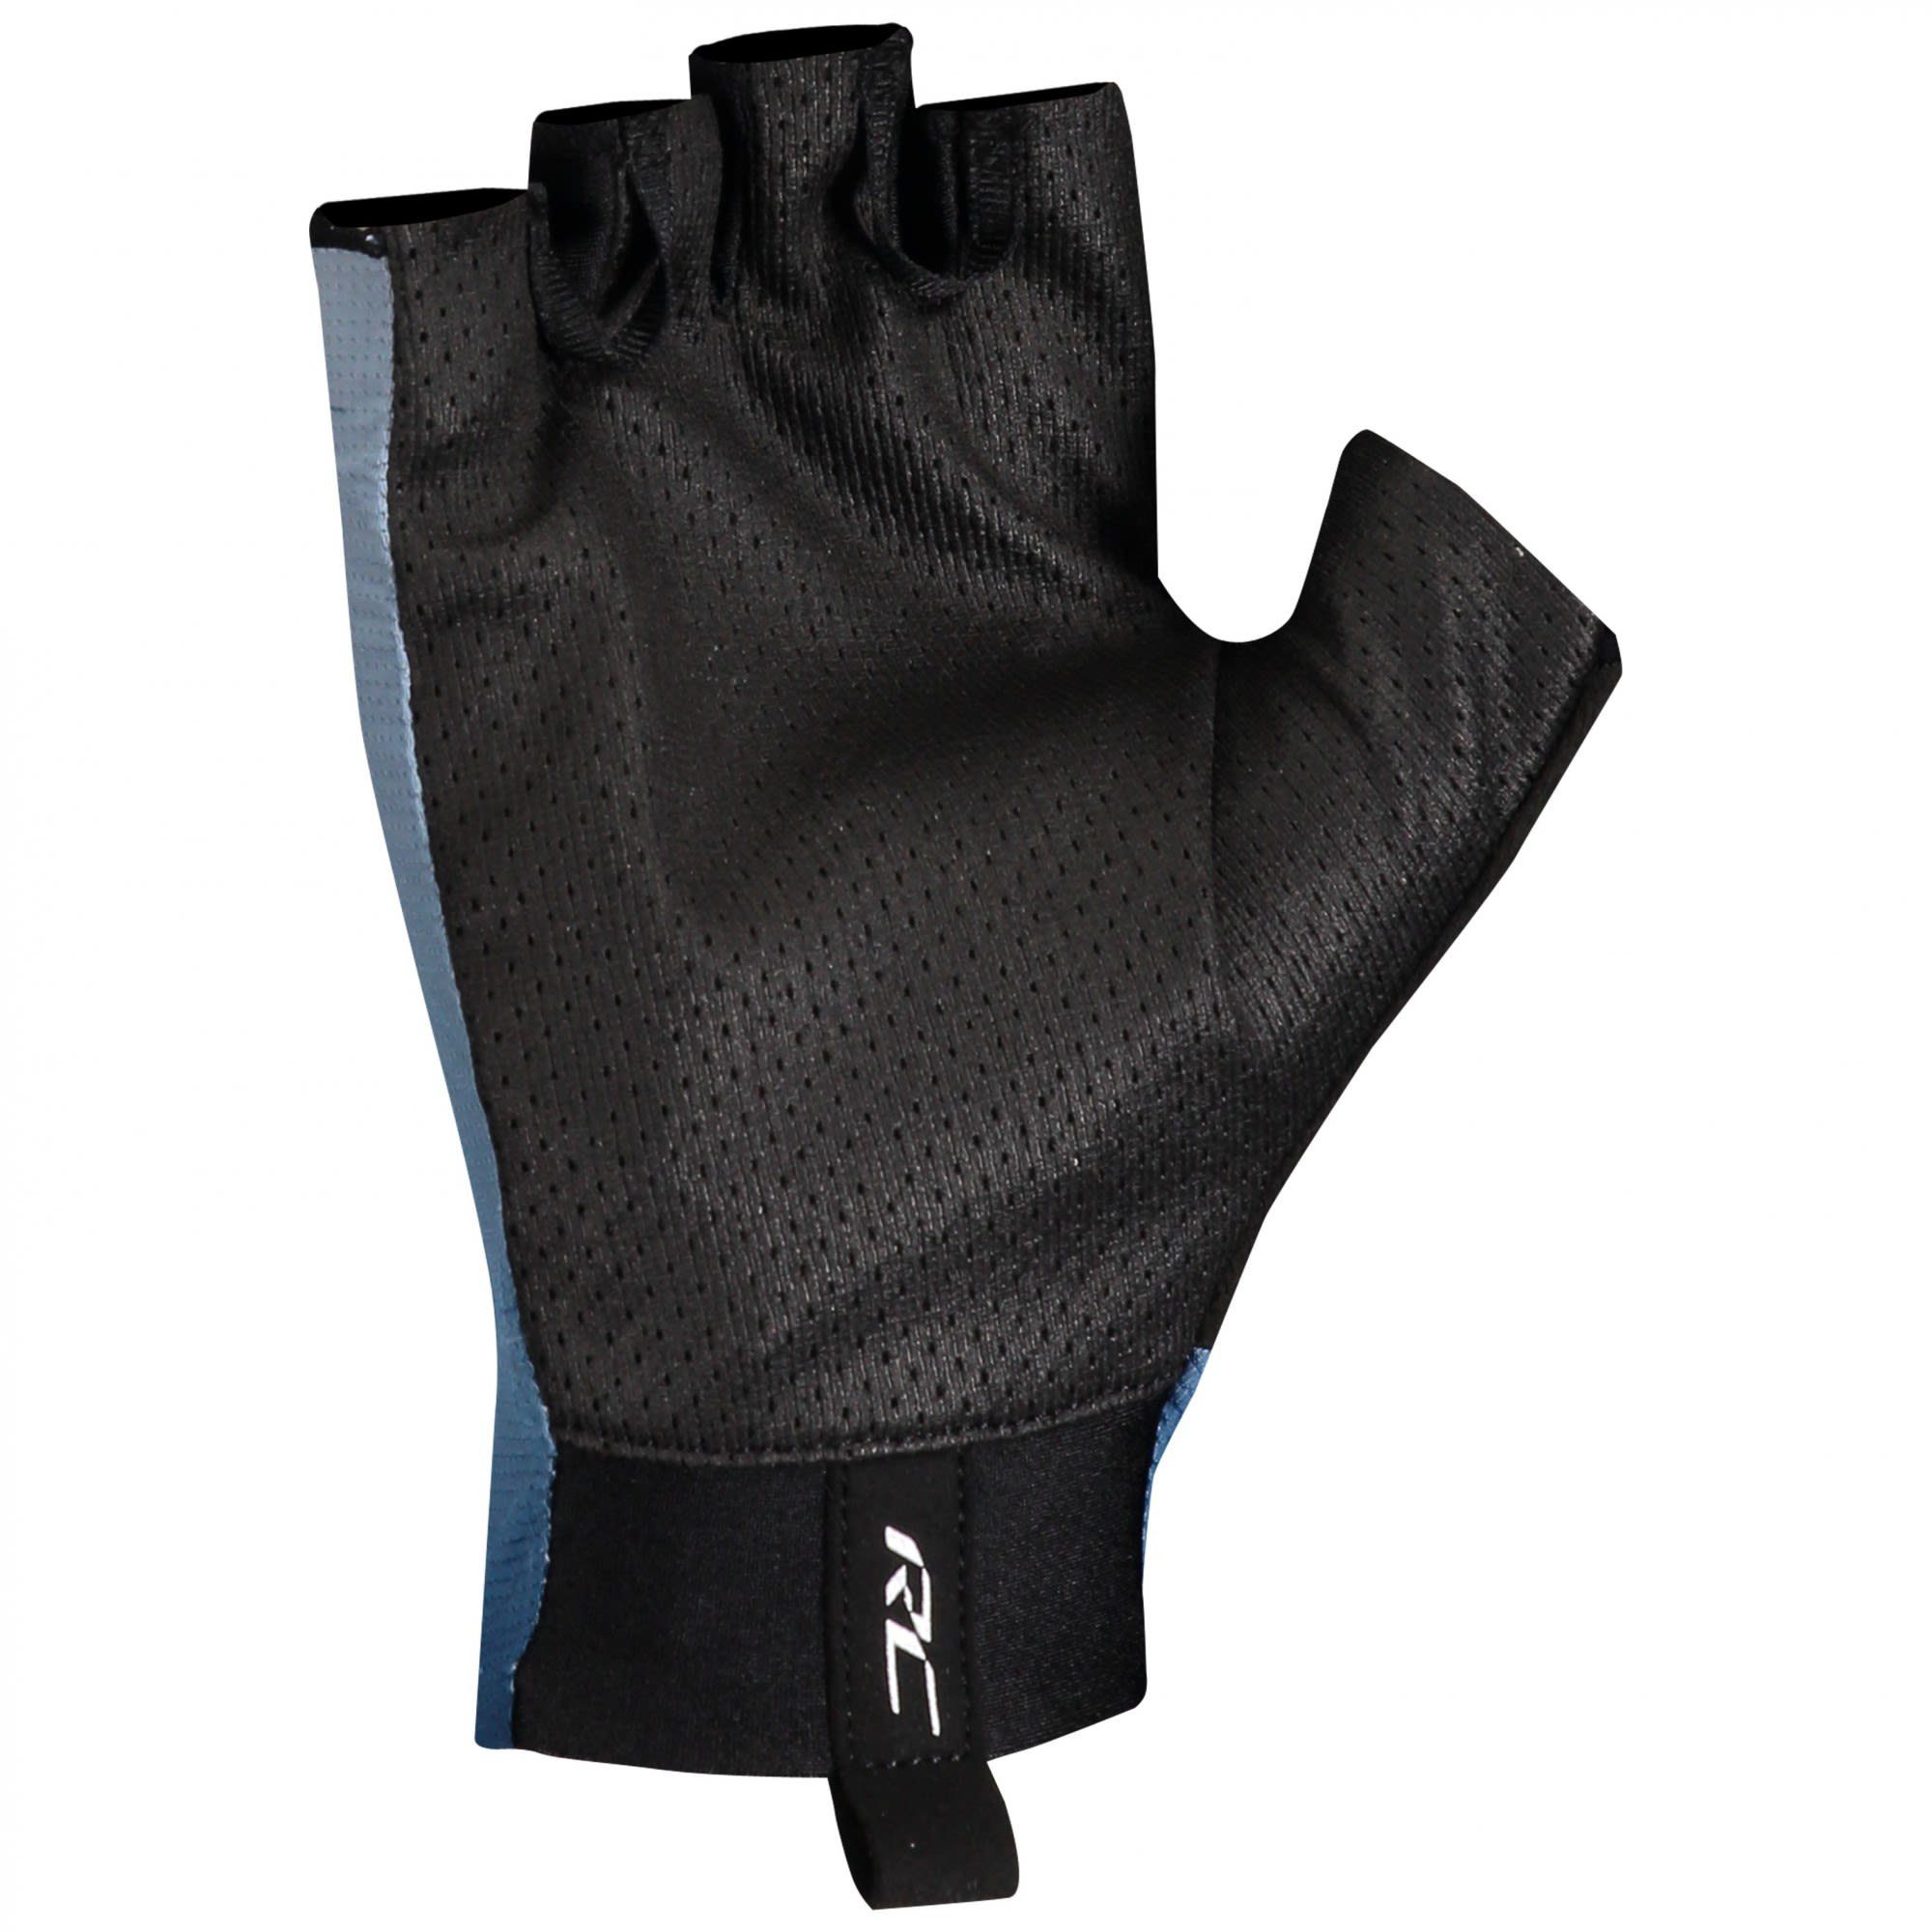 Scott (vorgängermodell) - Glove Fleecehandschuhe Rc Midnight Pro Glace Blue Blue Sf Scott